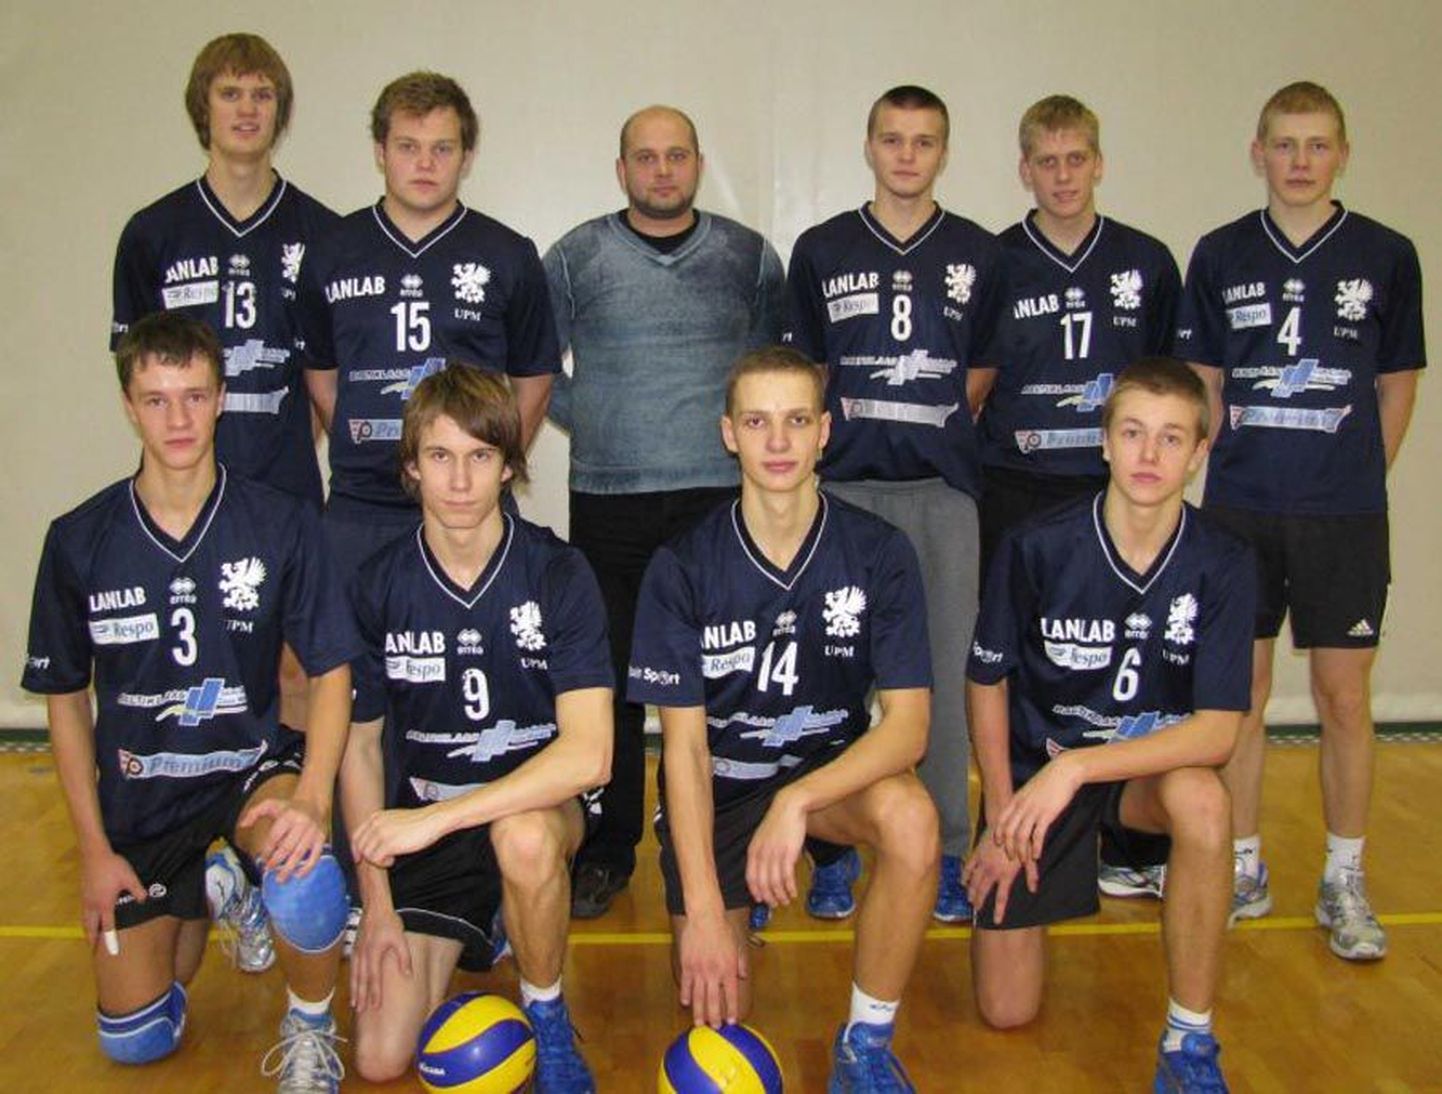 Eesti U-20 vanuseklassi võrkpalli karikavõistlustel kolmanda koha teeninud
Viljandi spordikooli meeskond